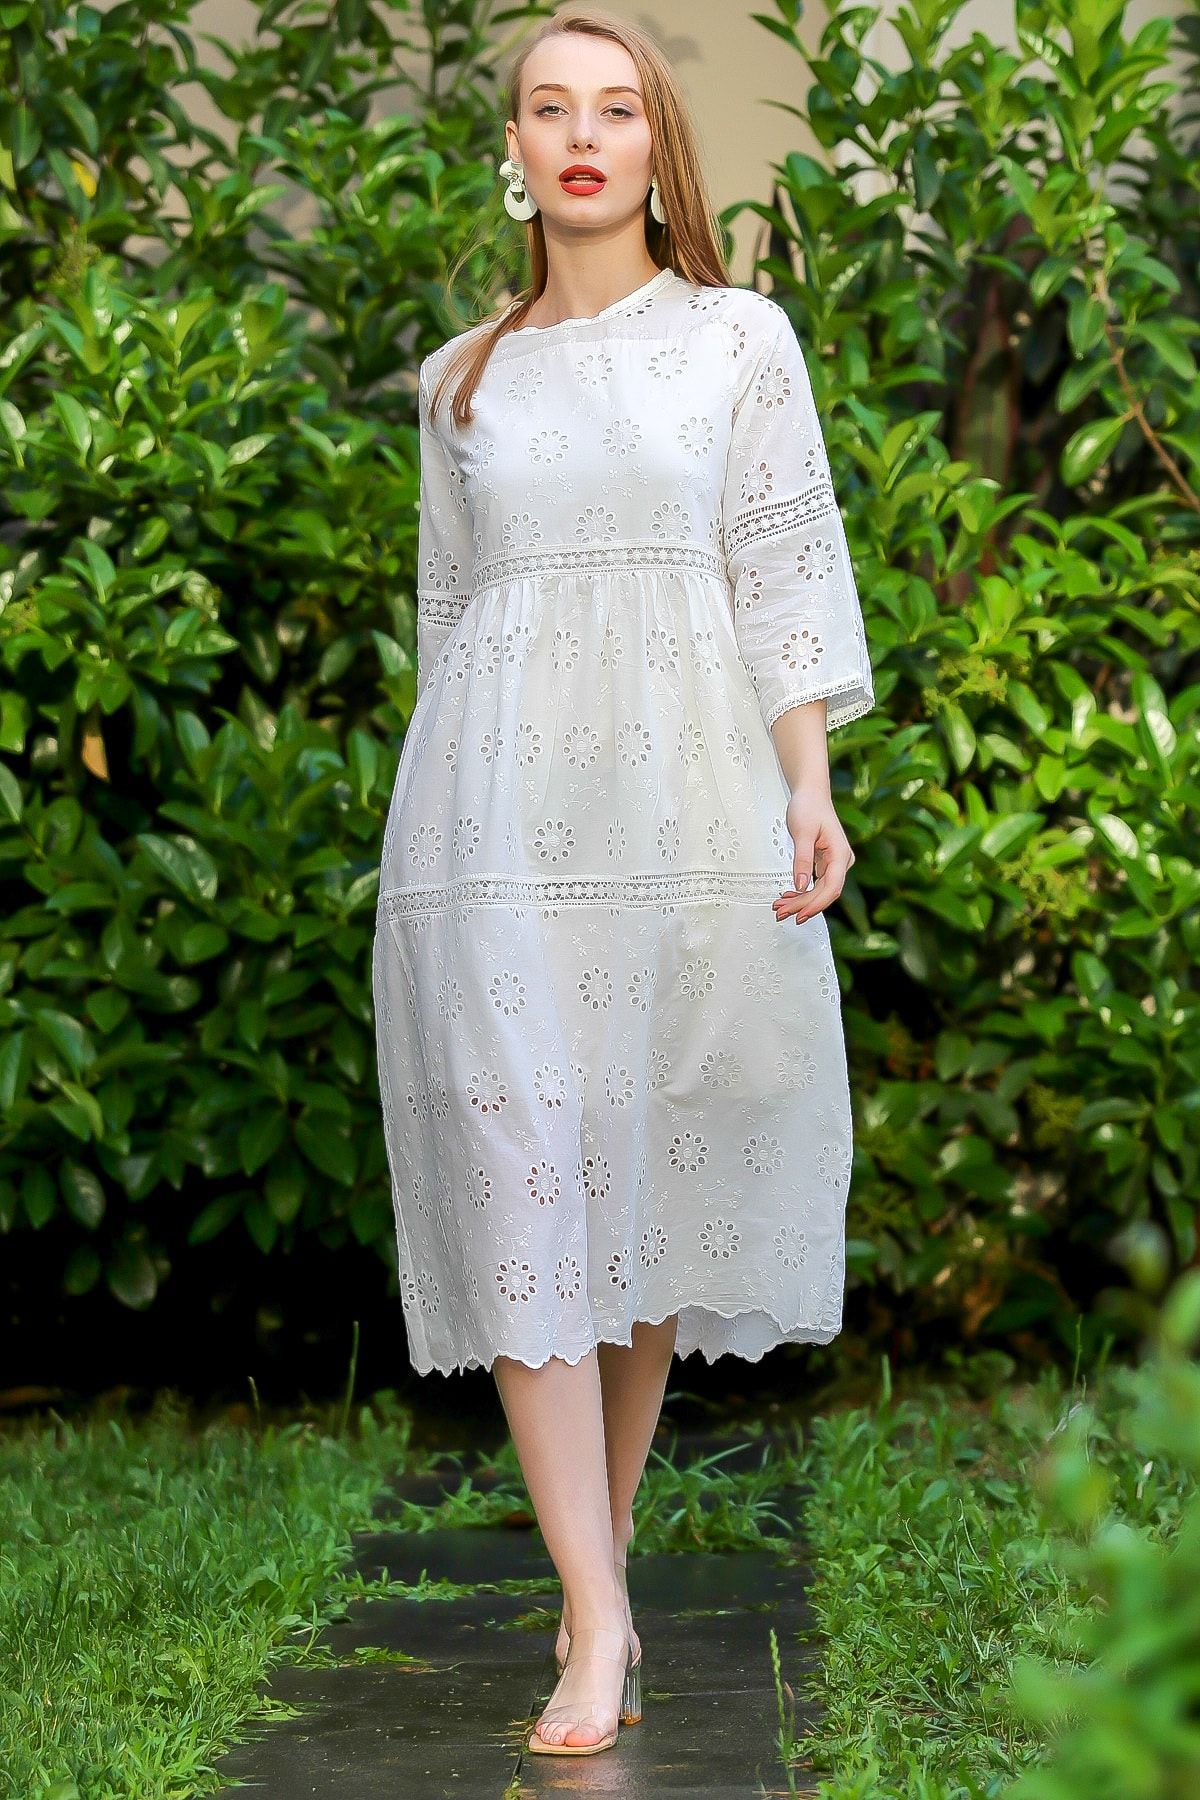 Chiccy Kadın Beyaz Vintage Fisto Ara Dantel Detaylı Etek Ucu Dilimli Elbise M10160000EL96627